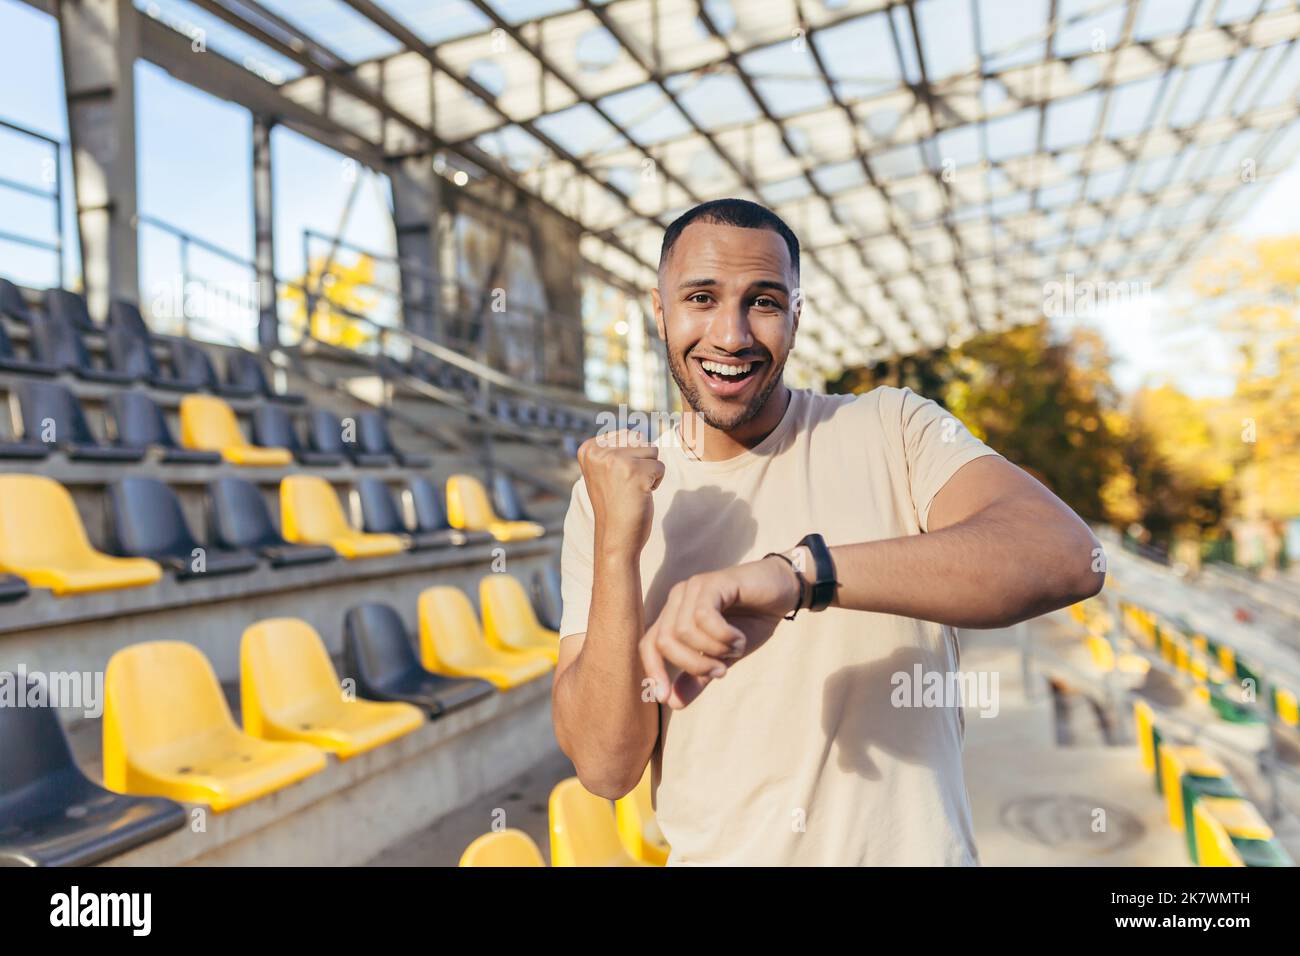 Glücklicher junger Sportler, der die Kamera anschaut und glücklich lächelt mit einem guten Fitnessergebnis, Mann, der die Zeit auf einer intelligenten Uhr des Fitnessarmbandes überprüft, tagsüber im Sportstadion läuft. Stockfoto